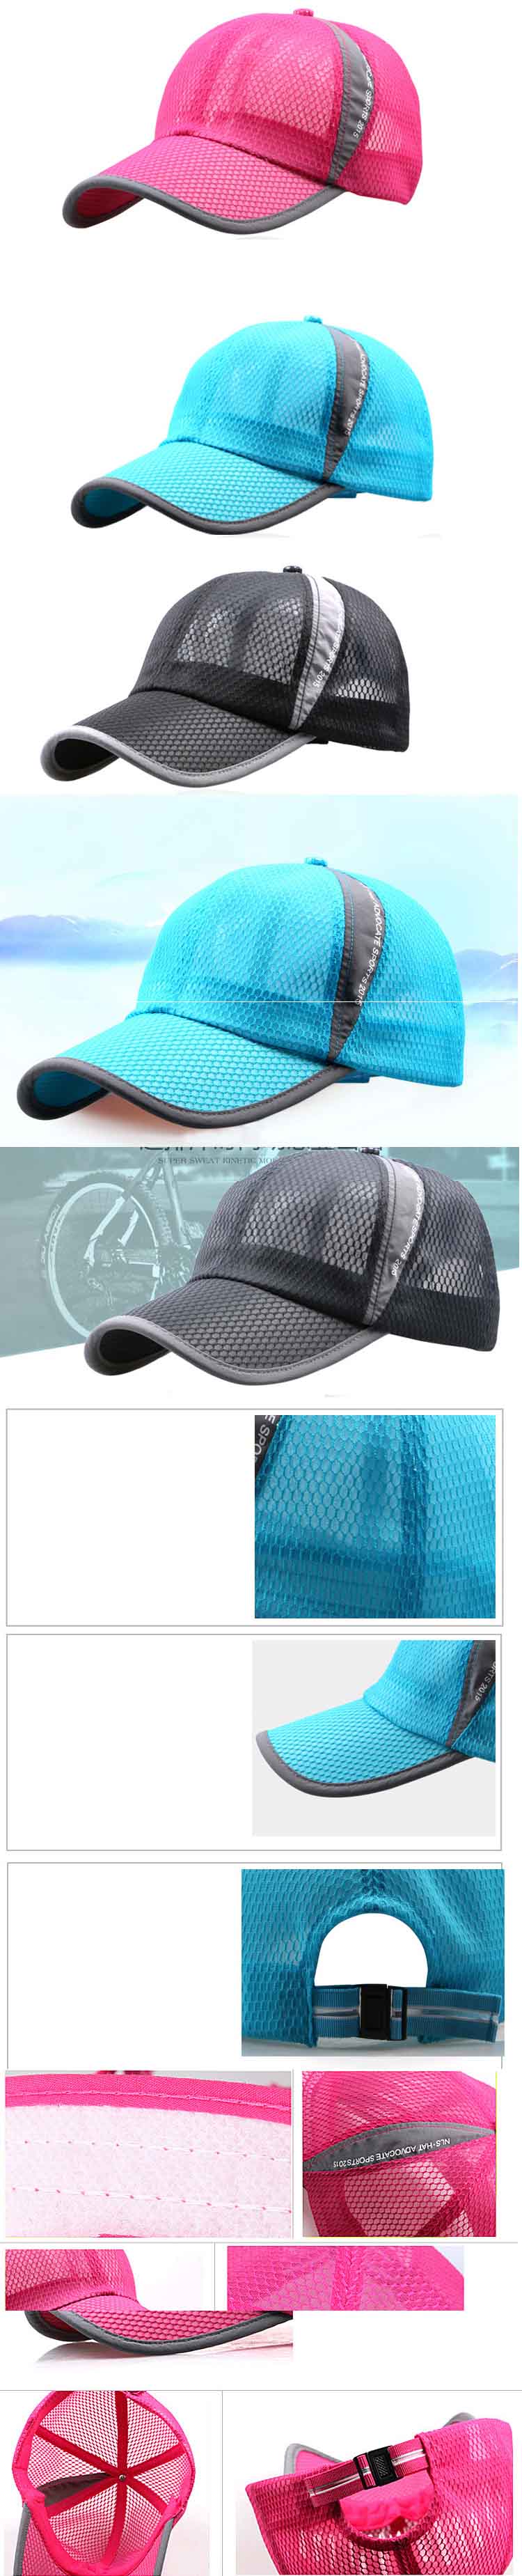 cari topi dengan material polyester model jaring? cocok untuk wanita dan pria , klik dan pesan online sekarang, ada ratusan model topi di pfp store